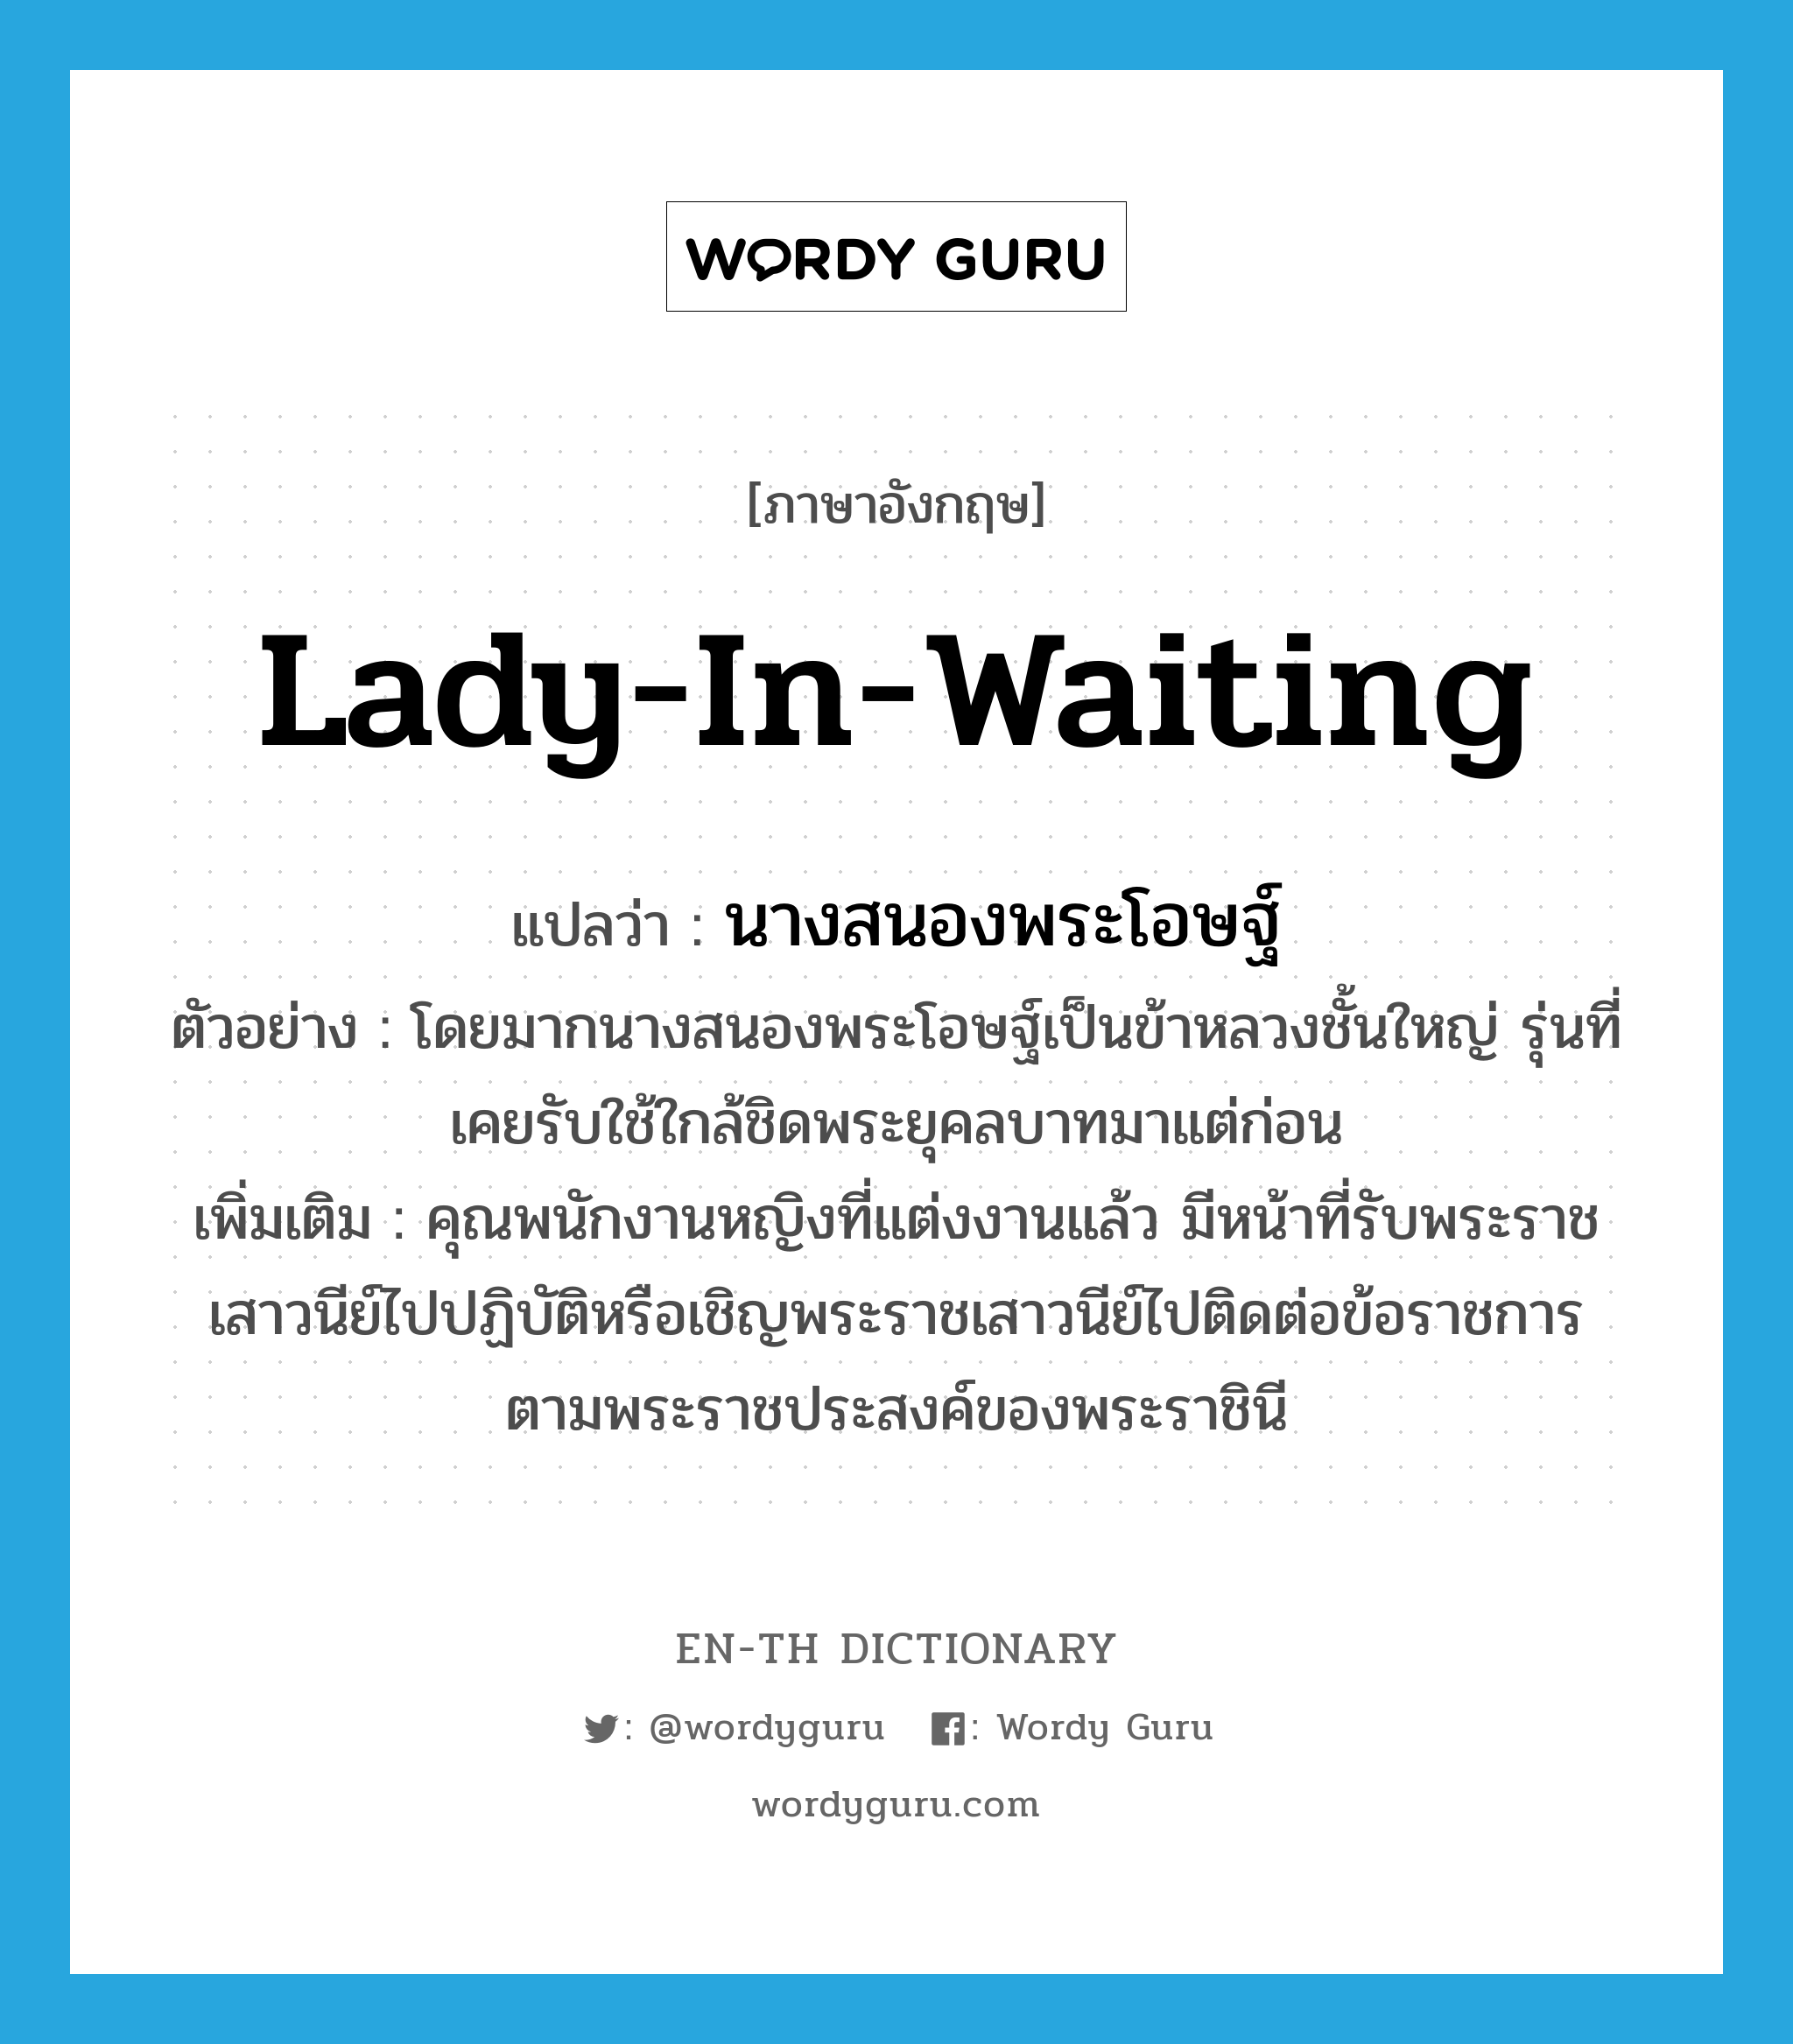 lady-in-waiting แปลว่า?, คำศัพท์ภาษาอังกฤษ lady-in-waiting แปลว่า นางสนองพระโอษฐ์ ประเภท N ตัวอย่าง โดยมากนางสนองพระโอษฐ์เป็นข้าหลวงชั้นใหญ่ รุ่นที่เคยรับใช้ใกล้ชิดพระยุคลบาทมาแต่ก่อน เพิ่มเติม คุณพนักงานหญิงที่แต่งงานแล้ว มีหน้าที่รับพระราชเสาวนีย์ไปปฏิบัติหรือเชิญพระราชเสาวนีย์ไปติดต่อข้อราชการตามพระราชประสงค์ของพระราชินี หมวด N